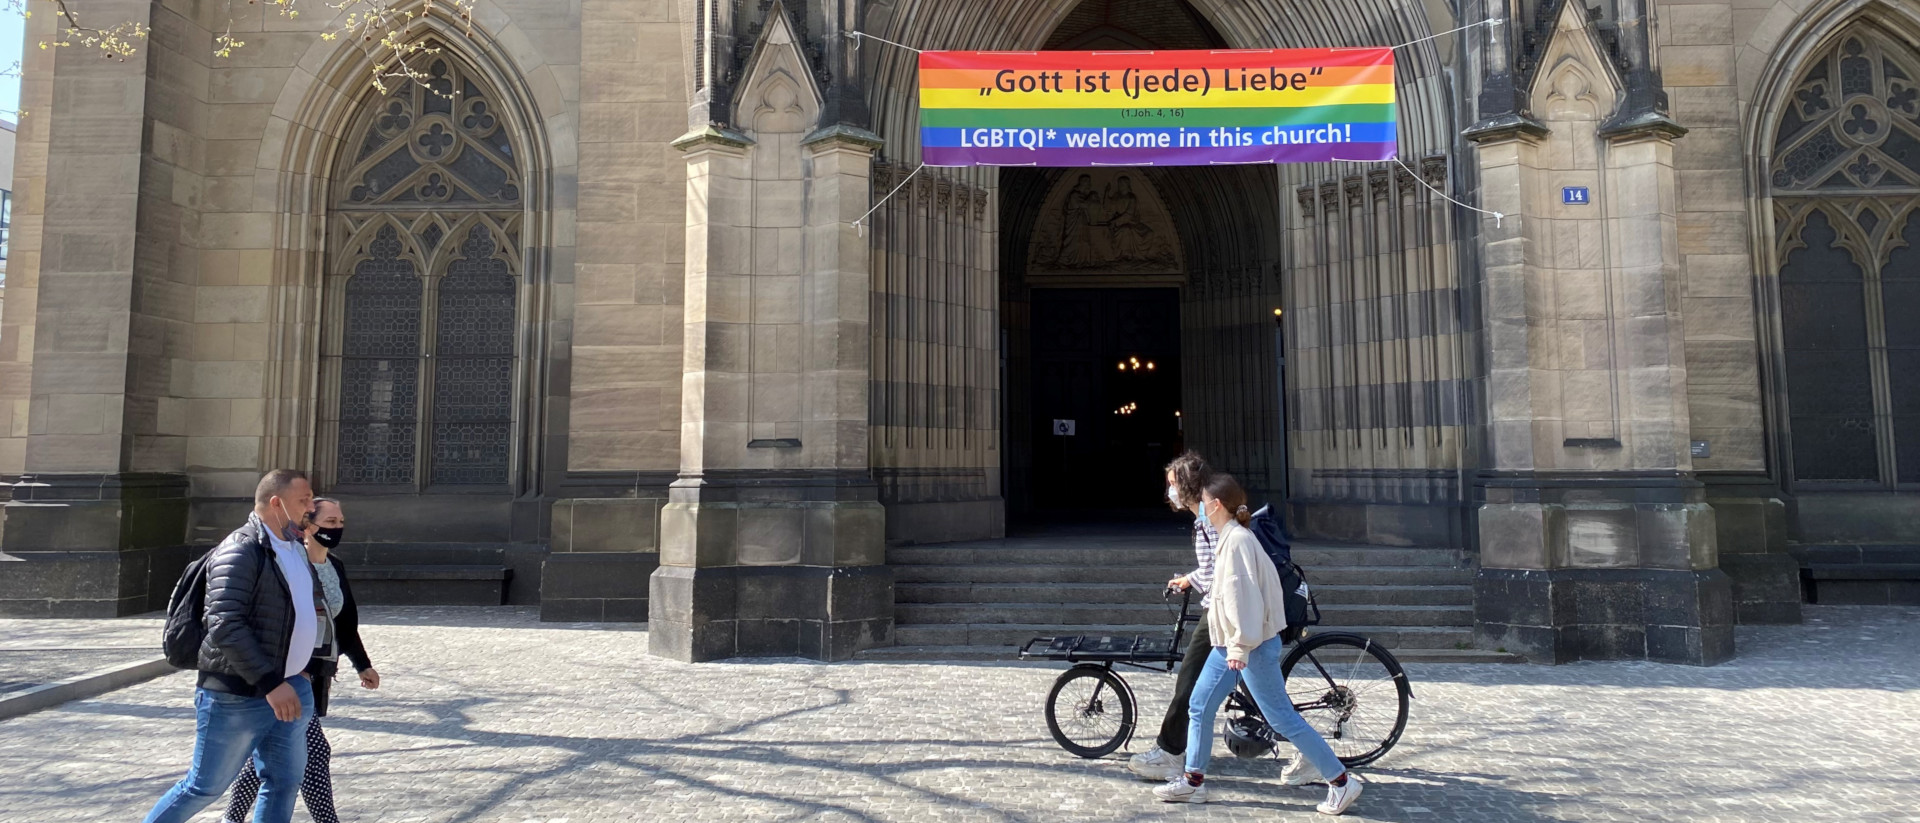 Mit Regenbogen-Fahne: die Elisabethenkirche in Basel.